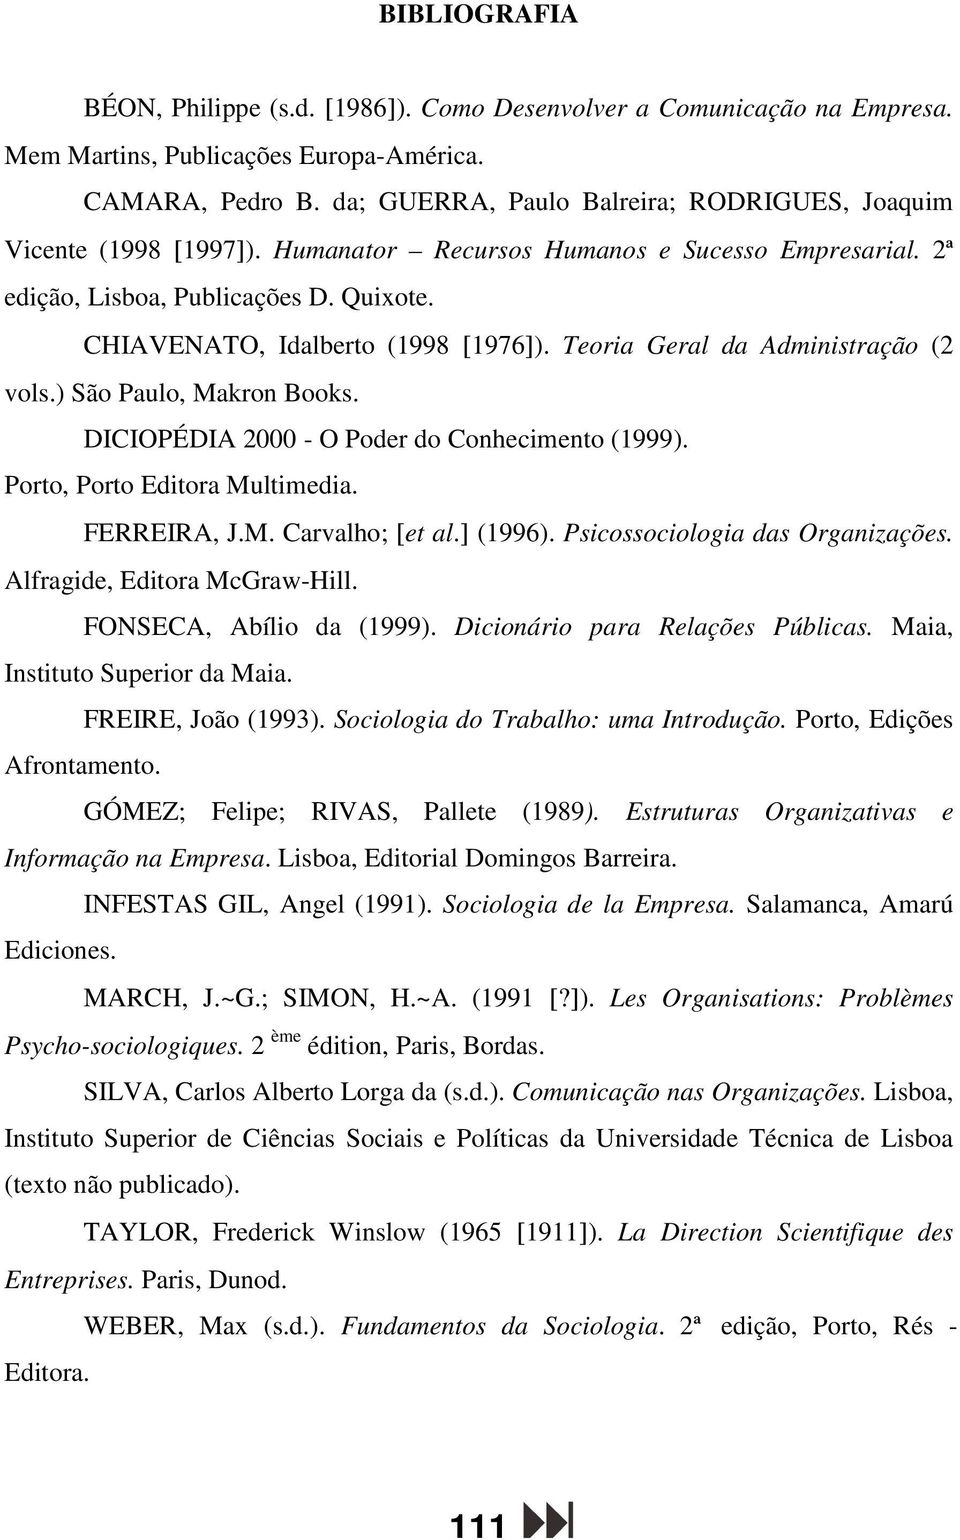 Teoria Geral da Administração (2 vols.) São Paulo, Makron Books. DICIOPÉDIA 2000 - O Poder do Conhecimento (1999). Porto, Porto Editora Multimedia. FERREIRA, J.M. Carvalho; [et al.] (1996).